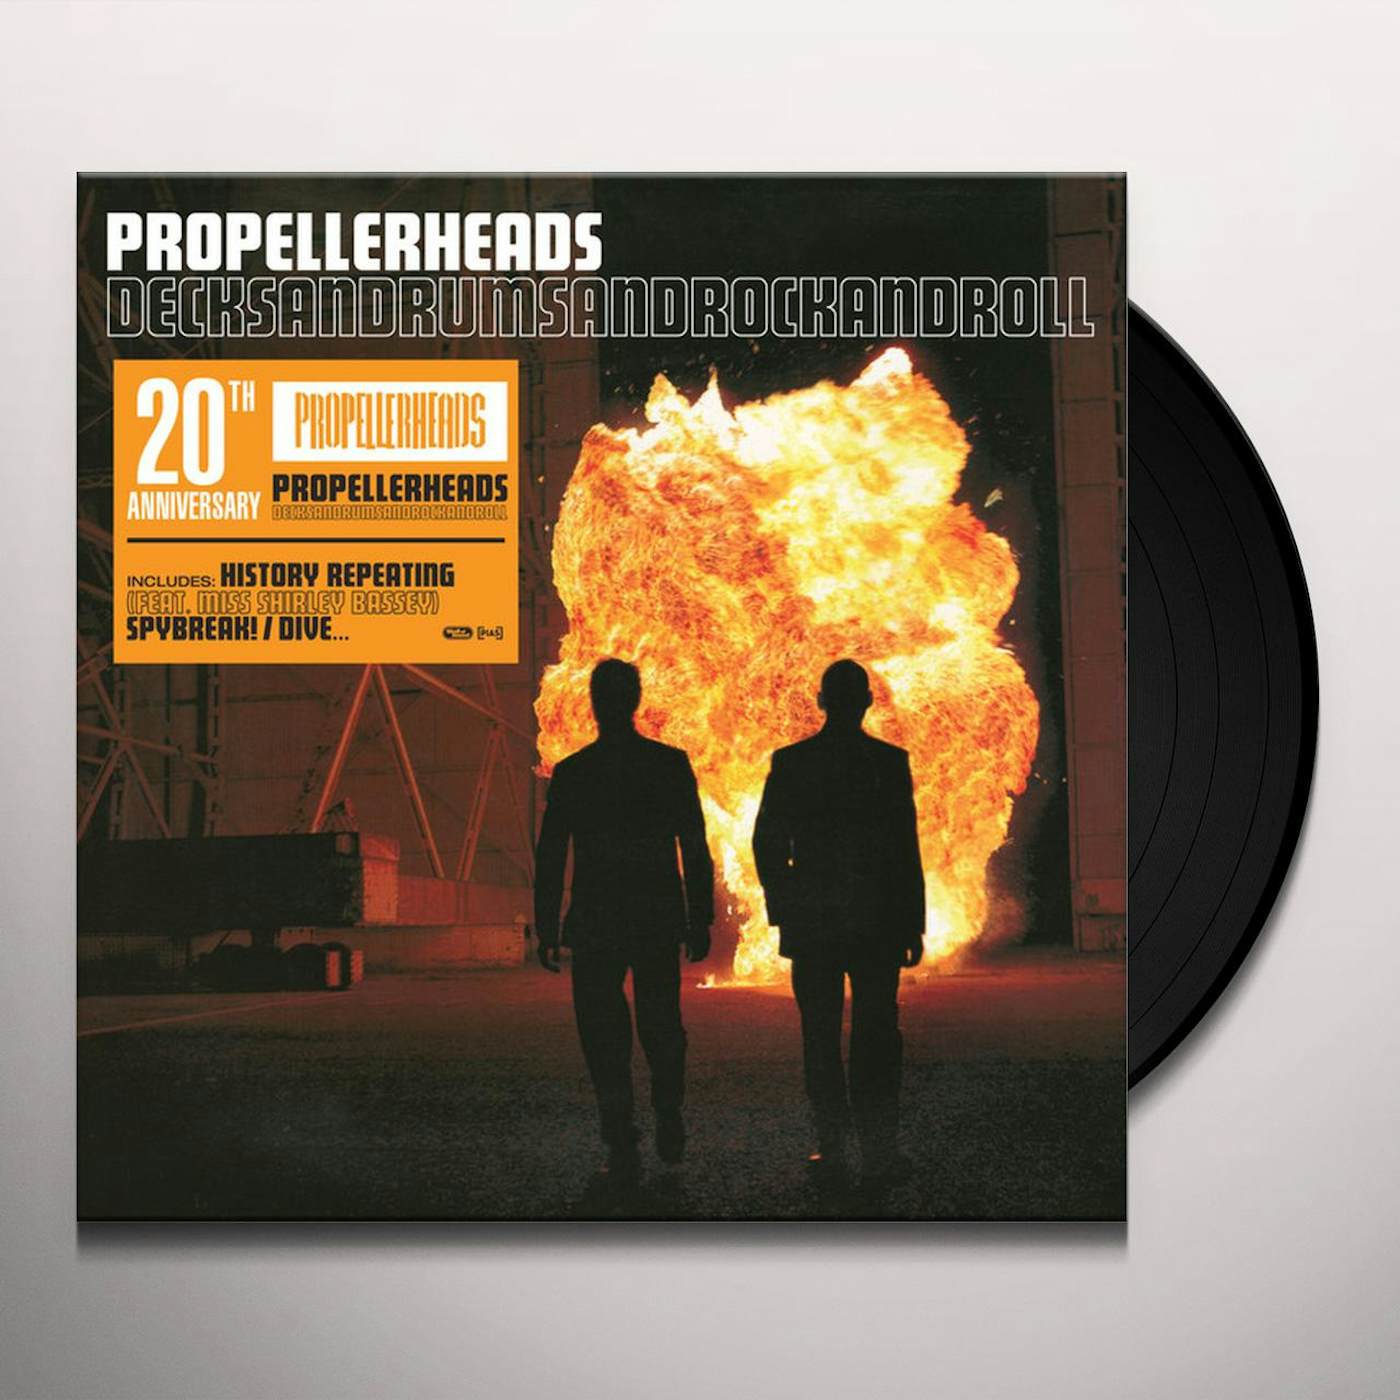 Propellerheads Decksandrumsandrockandroll 20th anniversary Vinyl Record